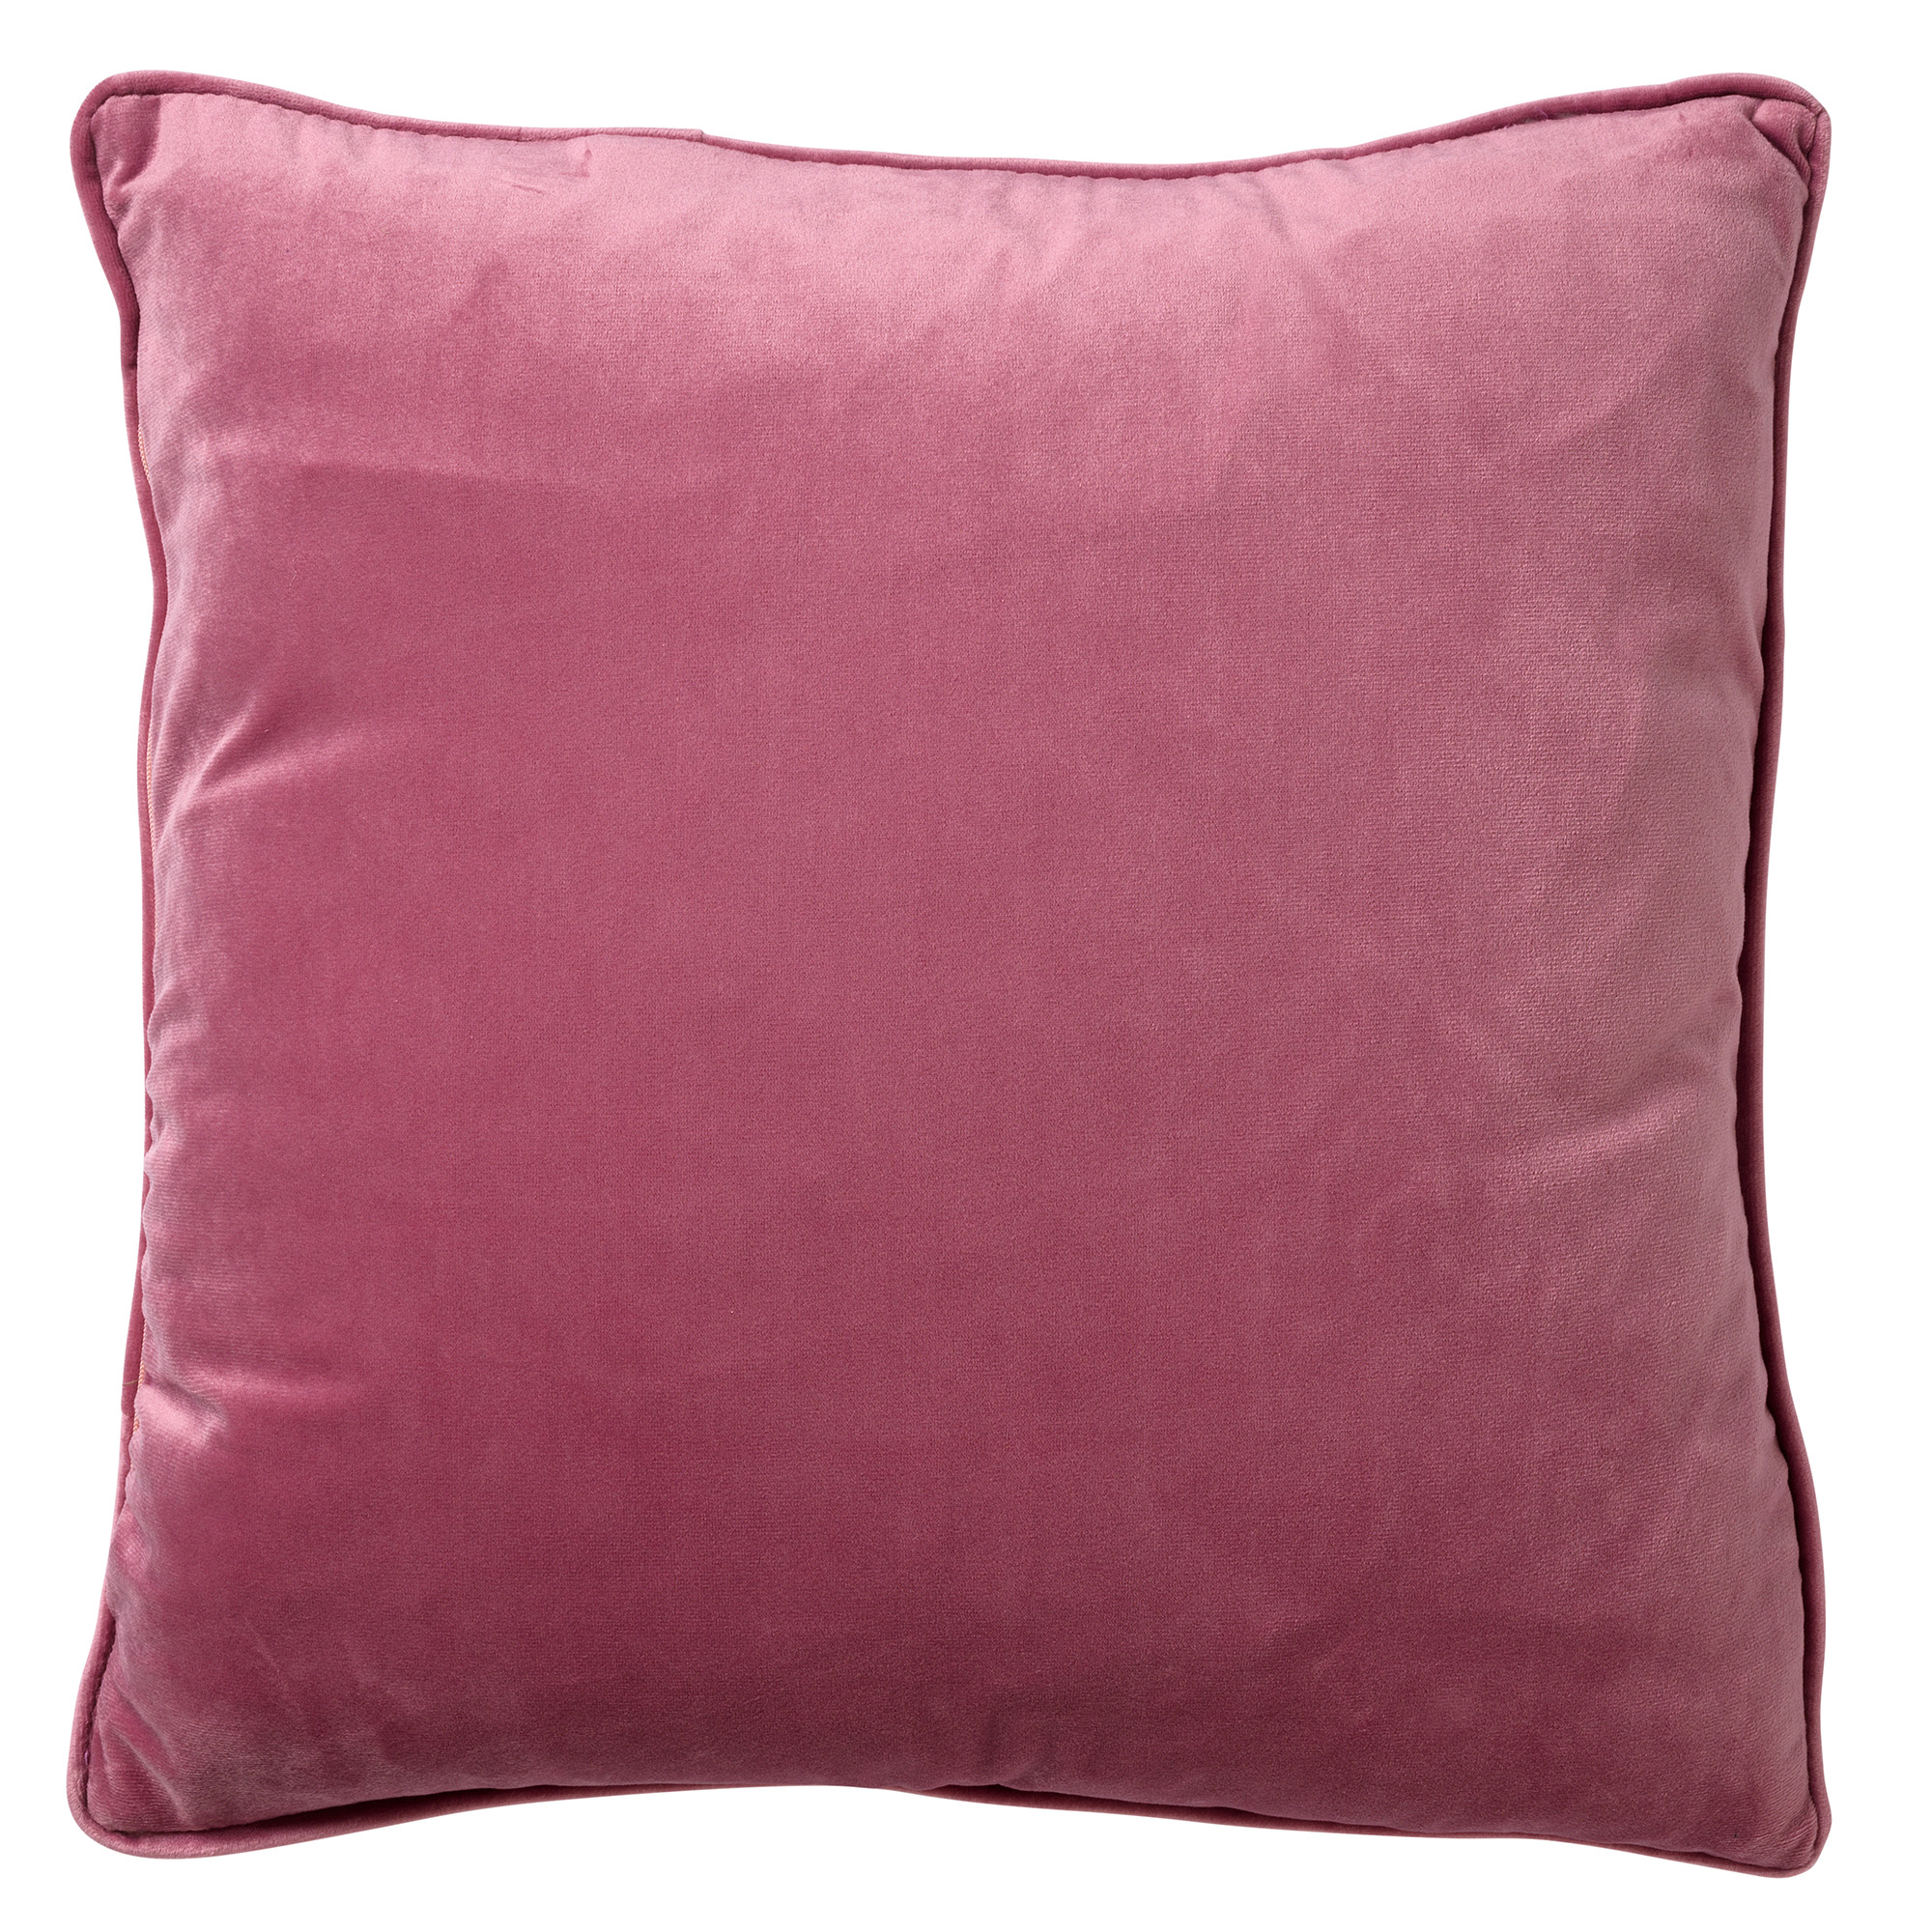 FINN - Sierkussen 45x45 cm - velvet - effen kleur - Heather Rose - roze